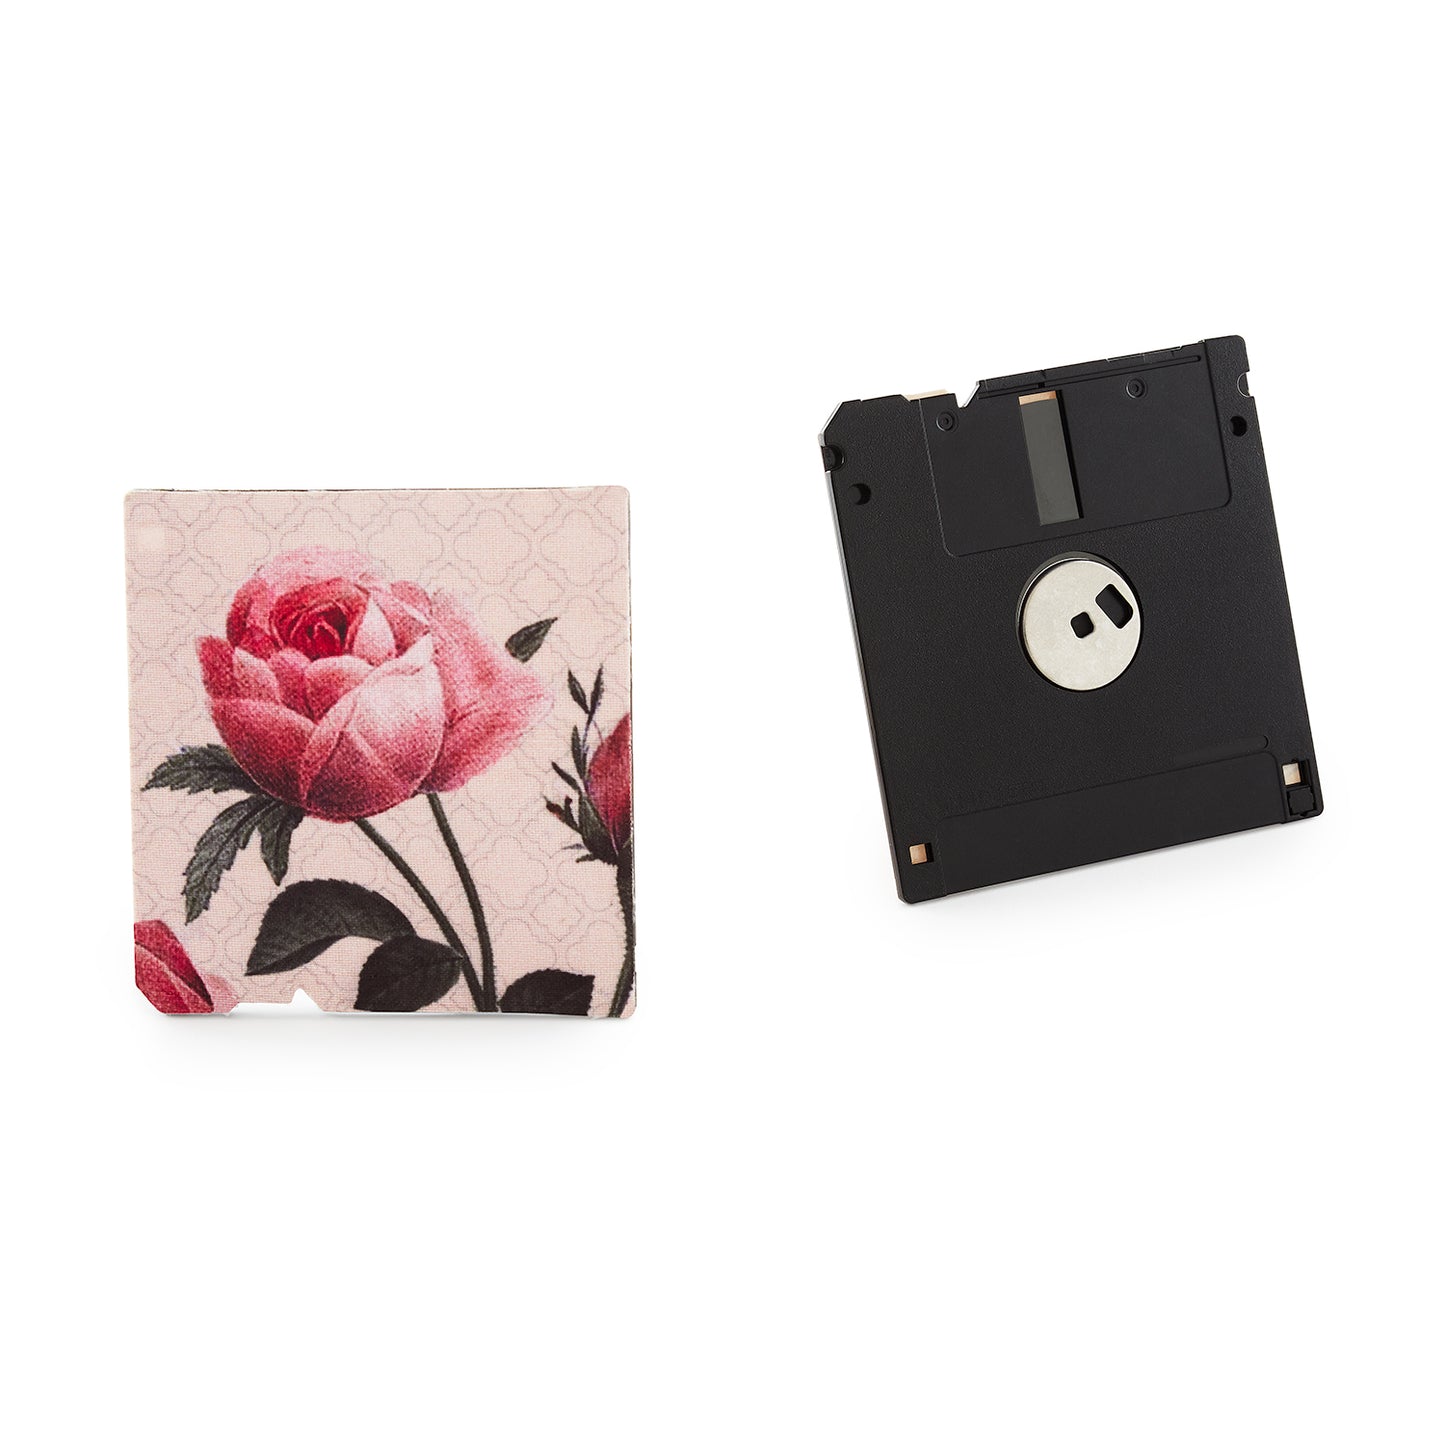 Crepe Pink - Floppy Disk Coaster Set of 2